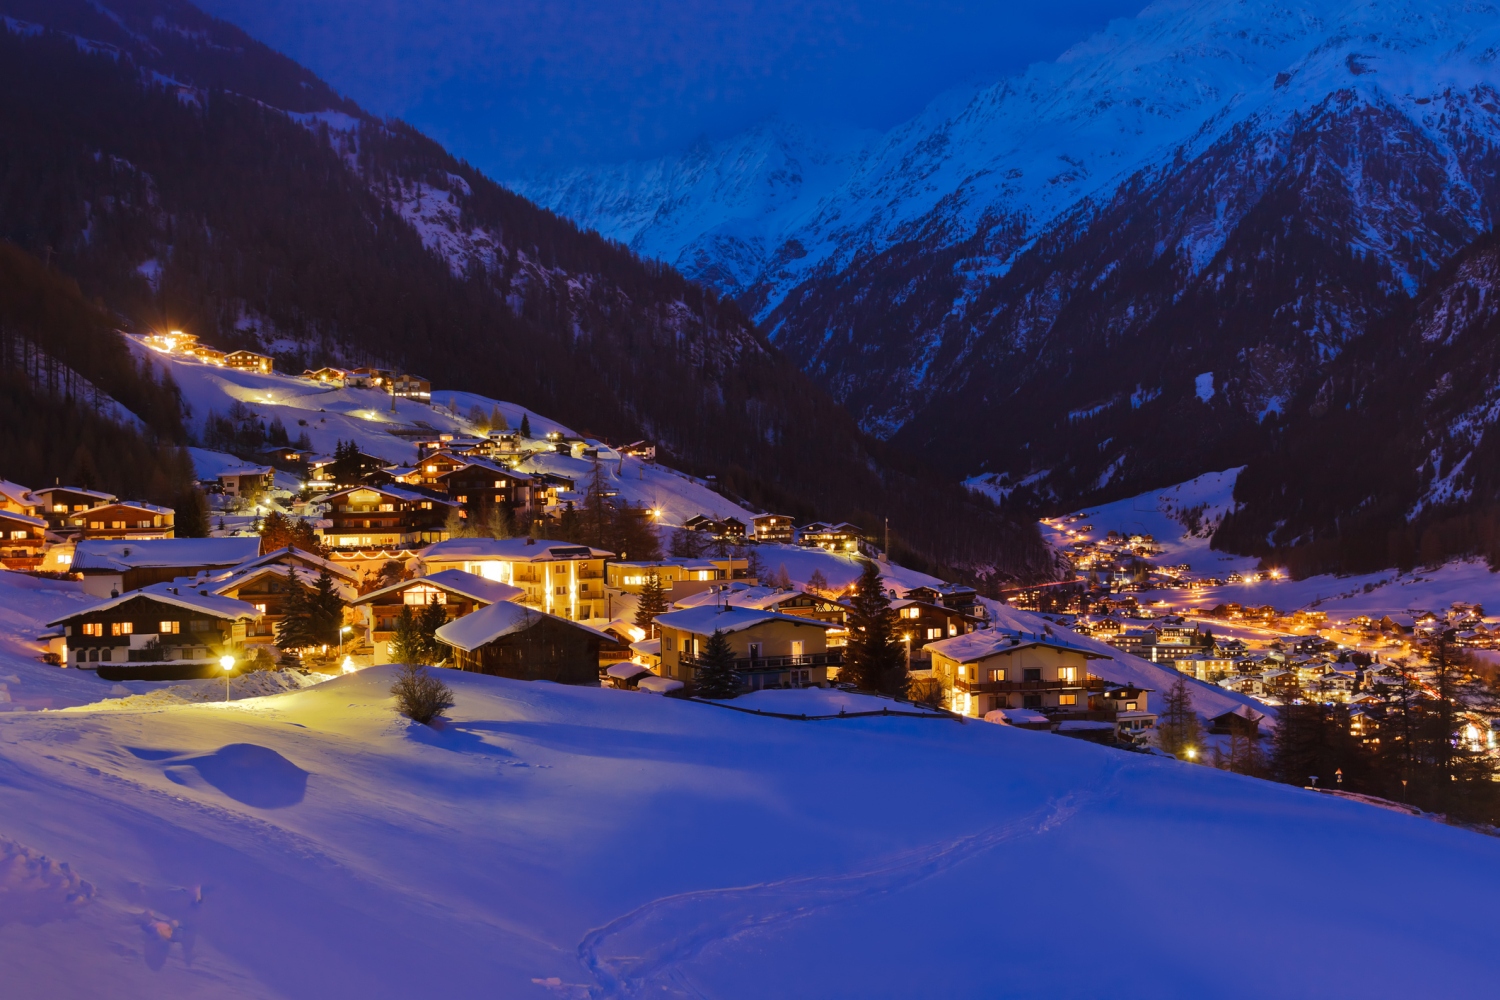 Solden ski resort Austria CREDIT iStock